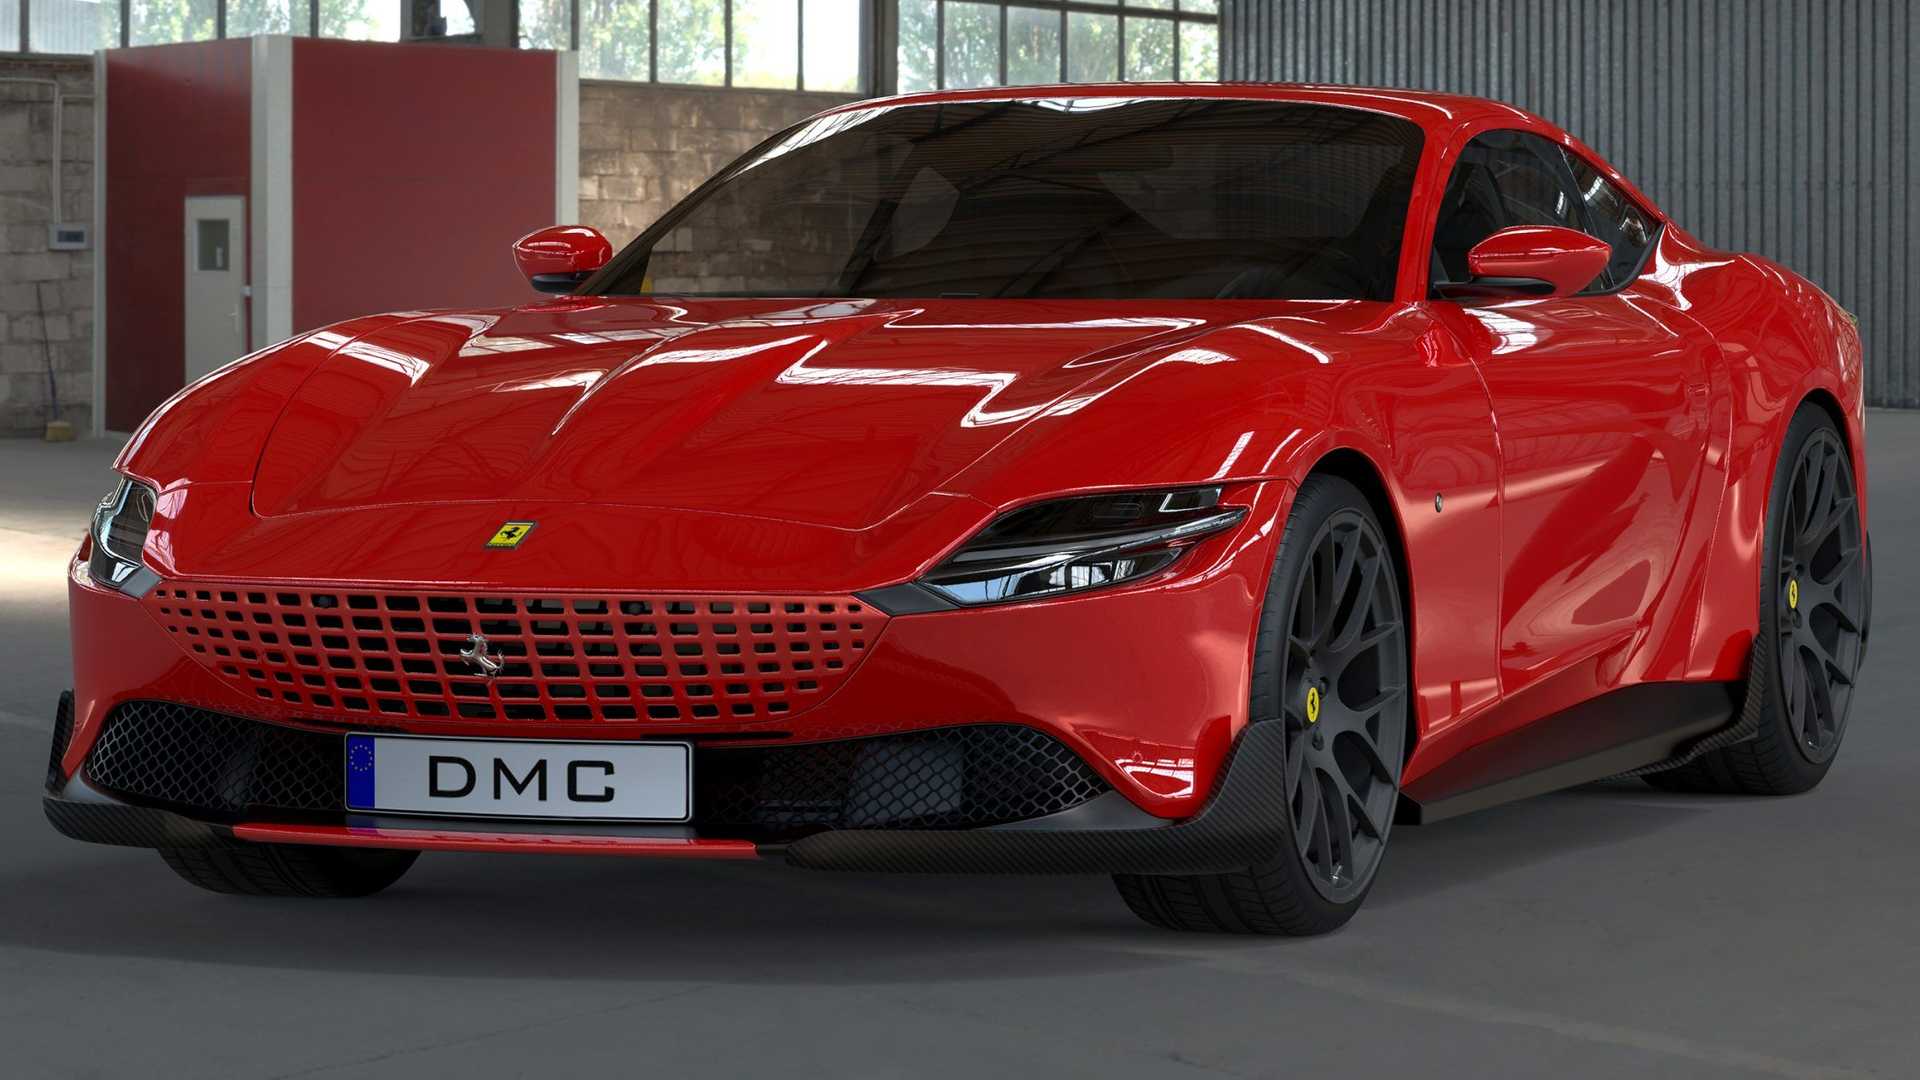 DMC's Ferrari Roma is a 708 hp Italian delight